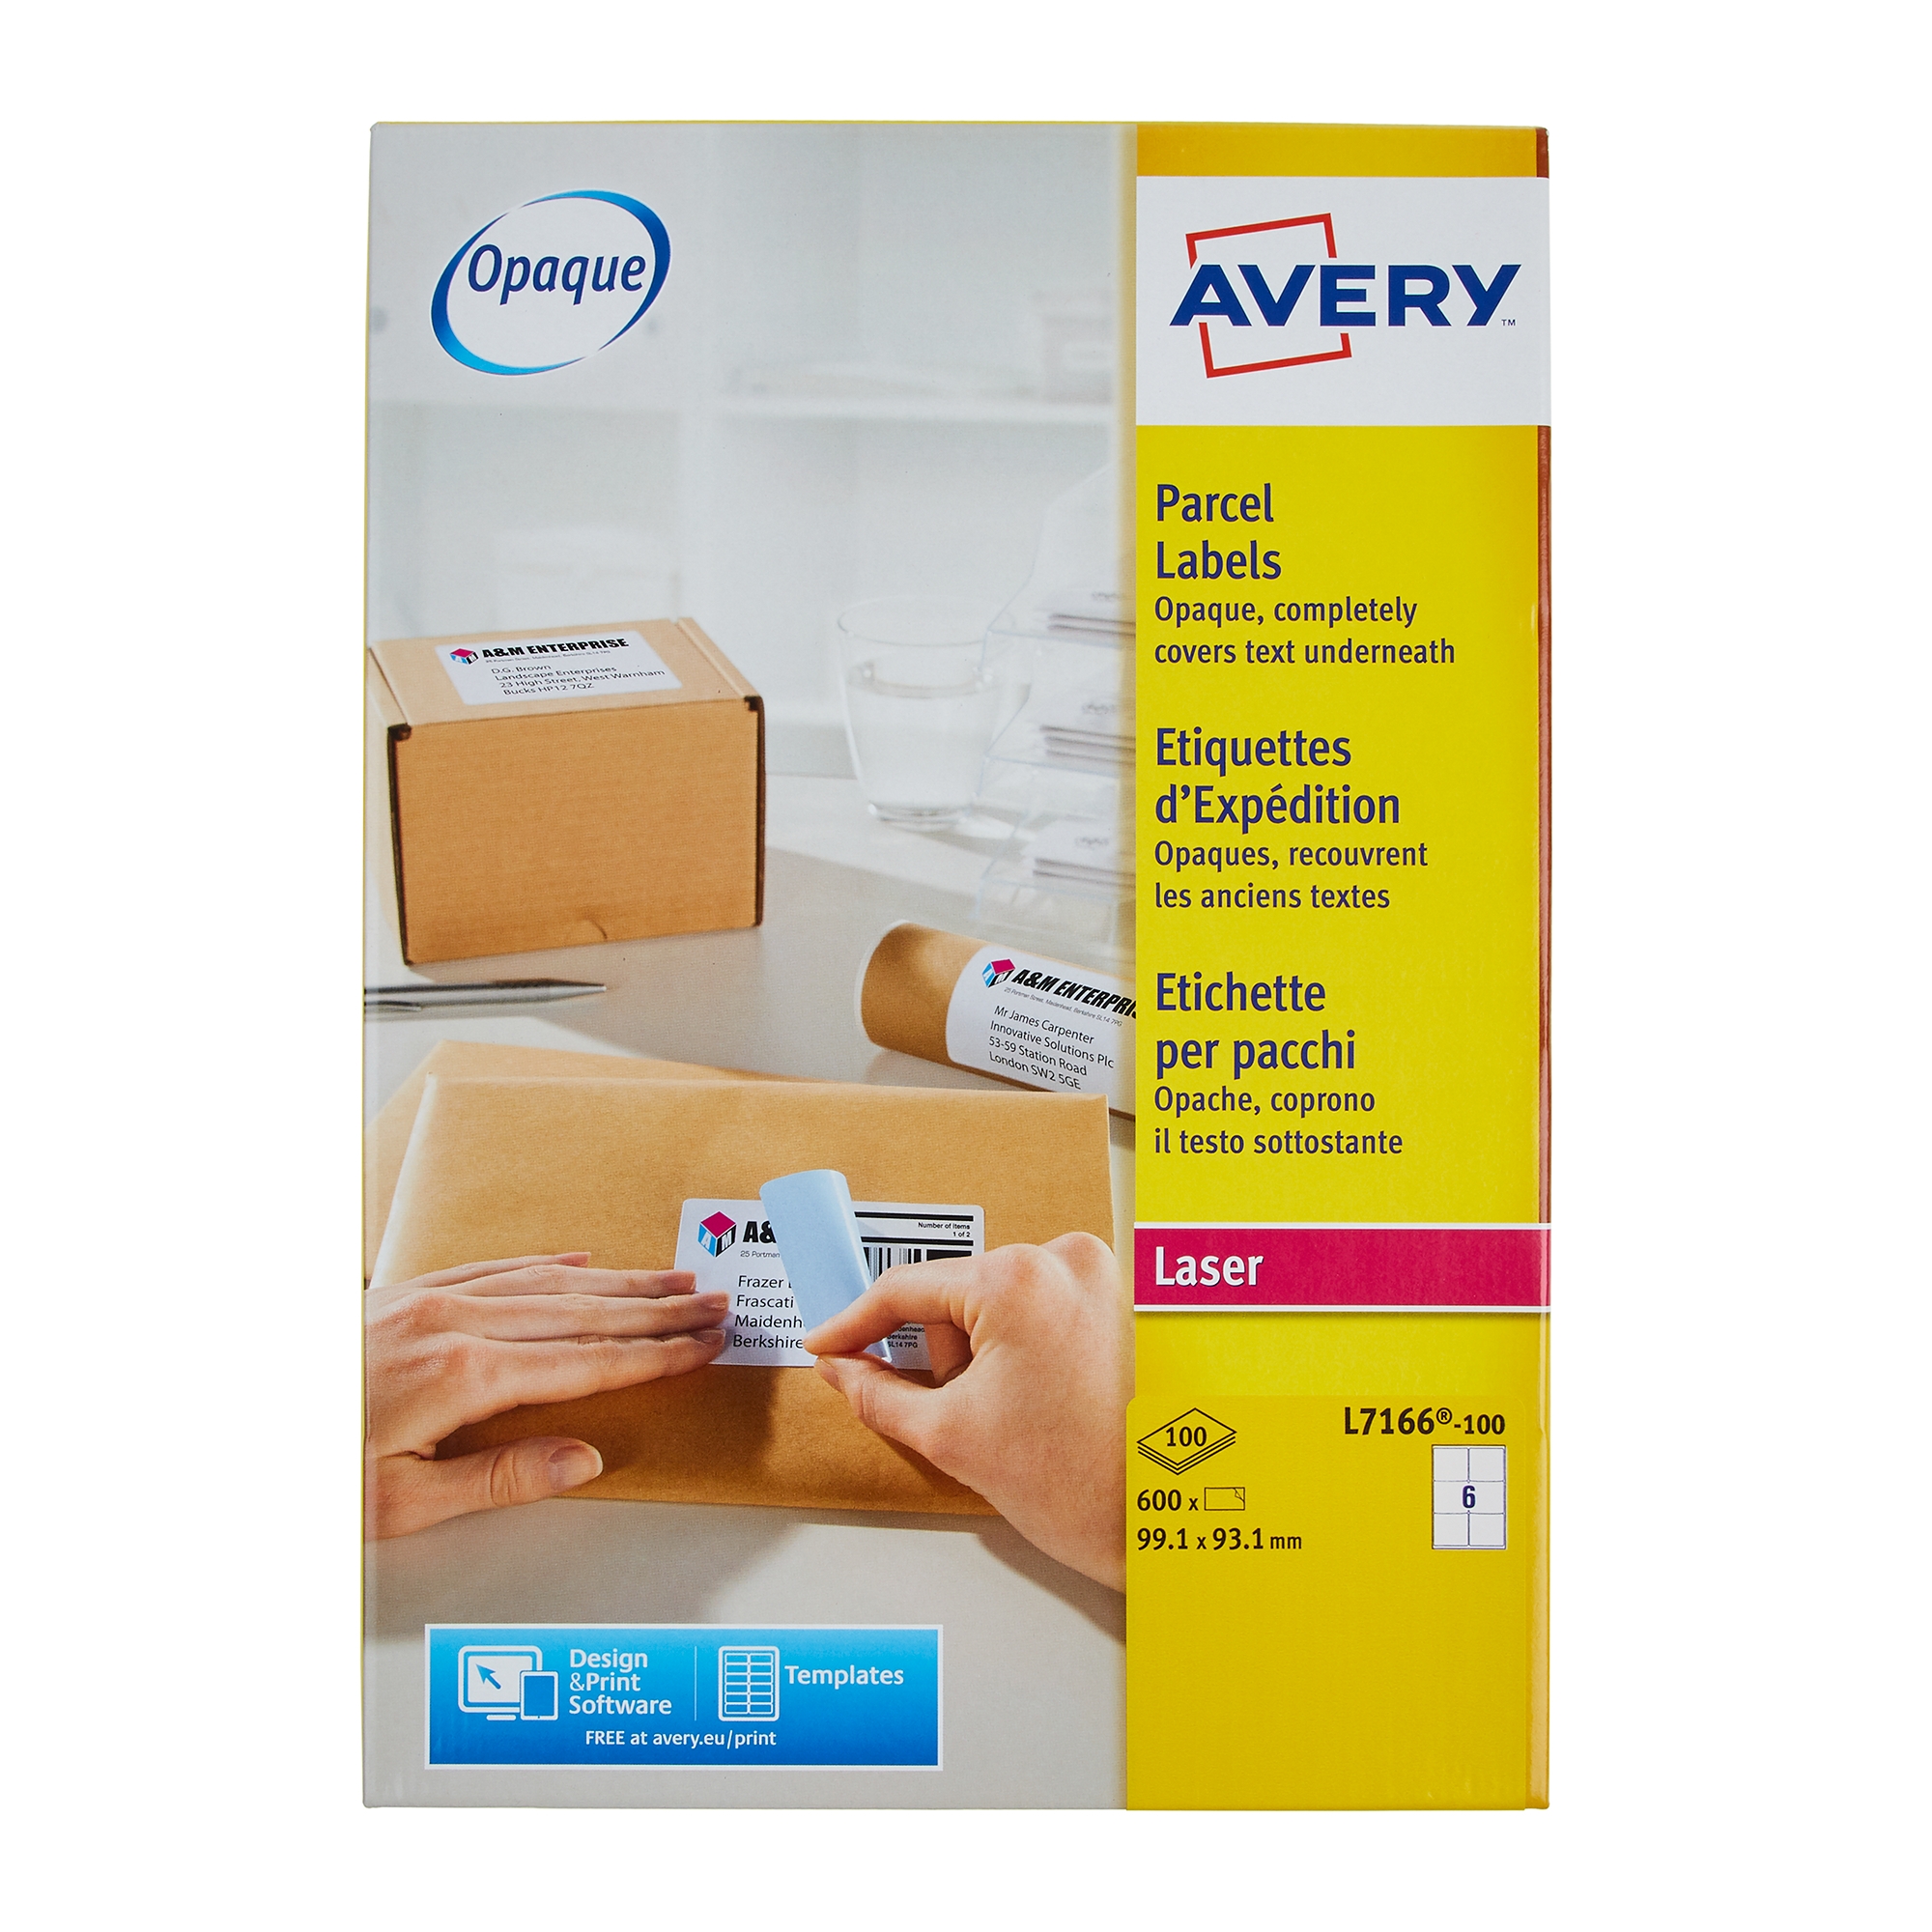 Avery Las Parcel Labels 199.6 X 143.5mm